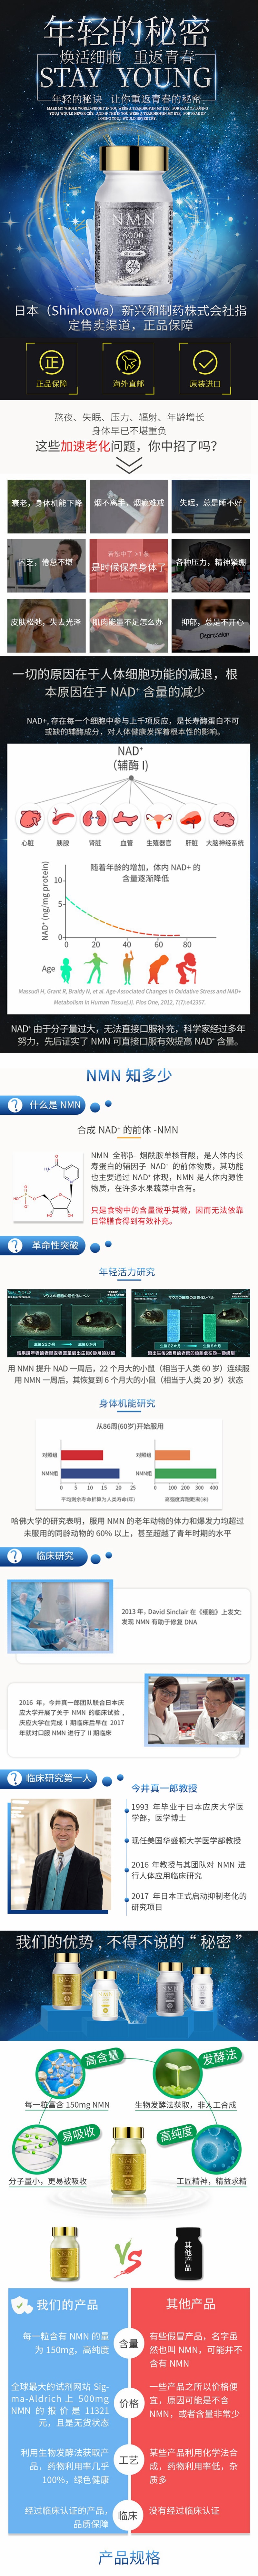 【日本直郵】新興和製藥 MIRAI LAB NMN3000 高純度抗衰老 逆齡丸